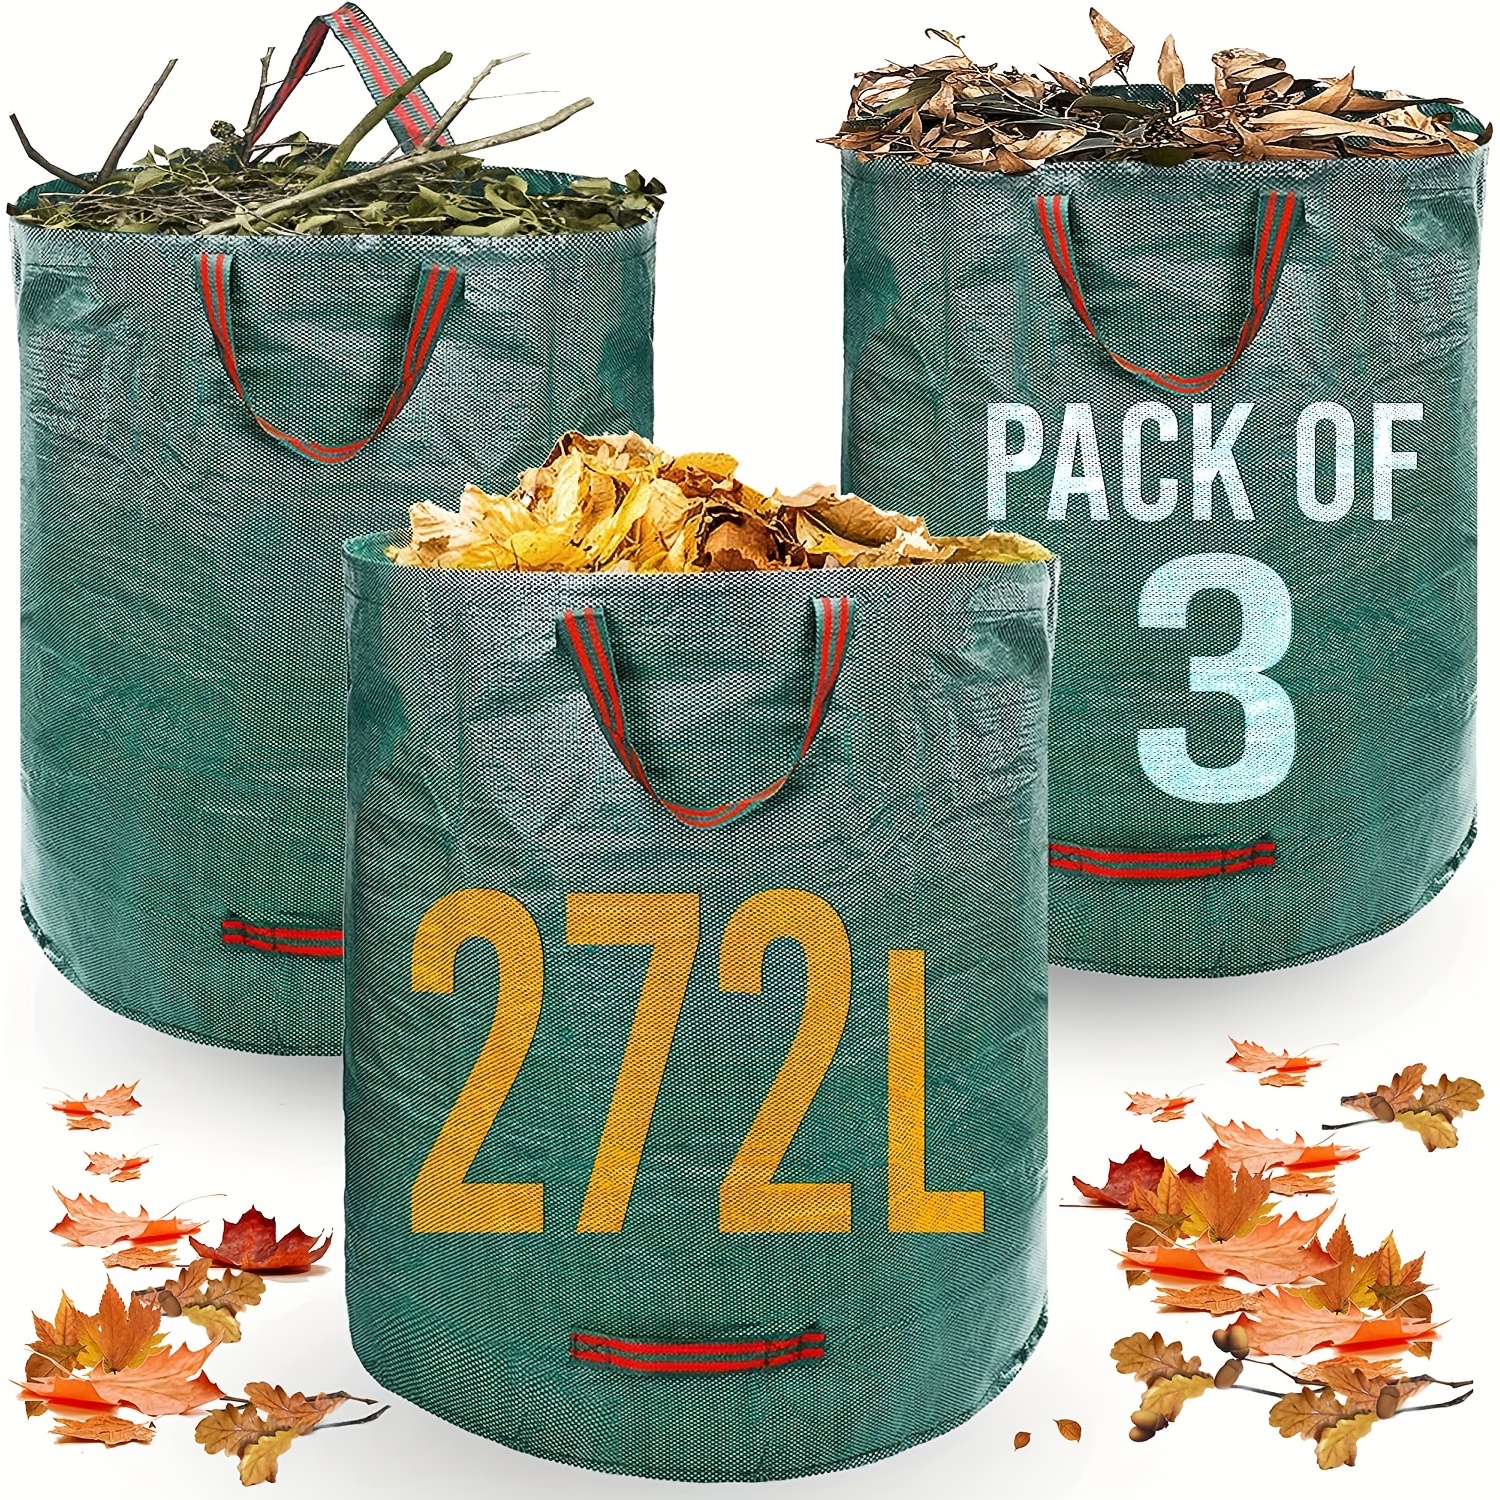 3 Bags, 72 Gallon Garden Bags, Reusable Heavy-duty Garden Bags